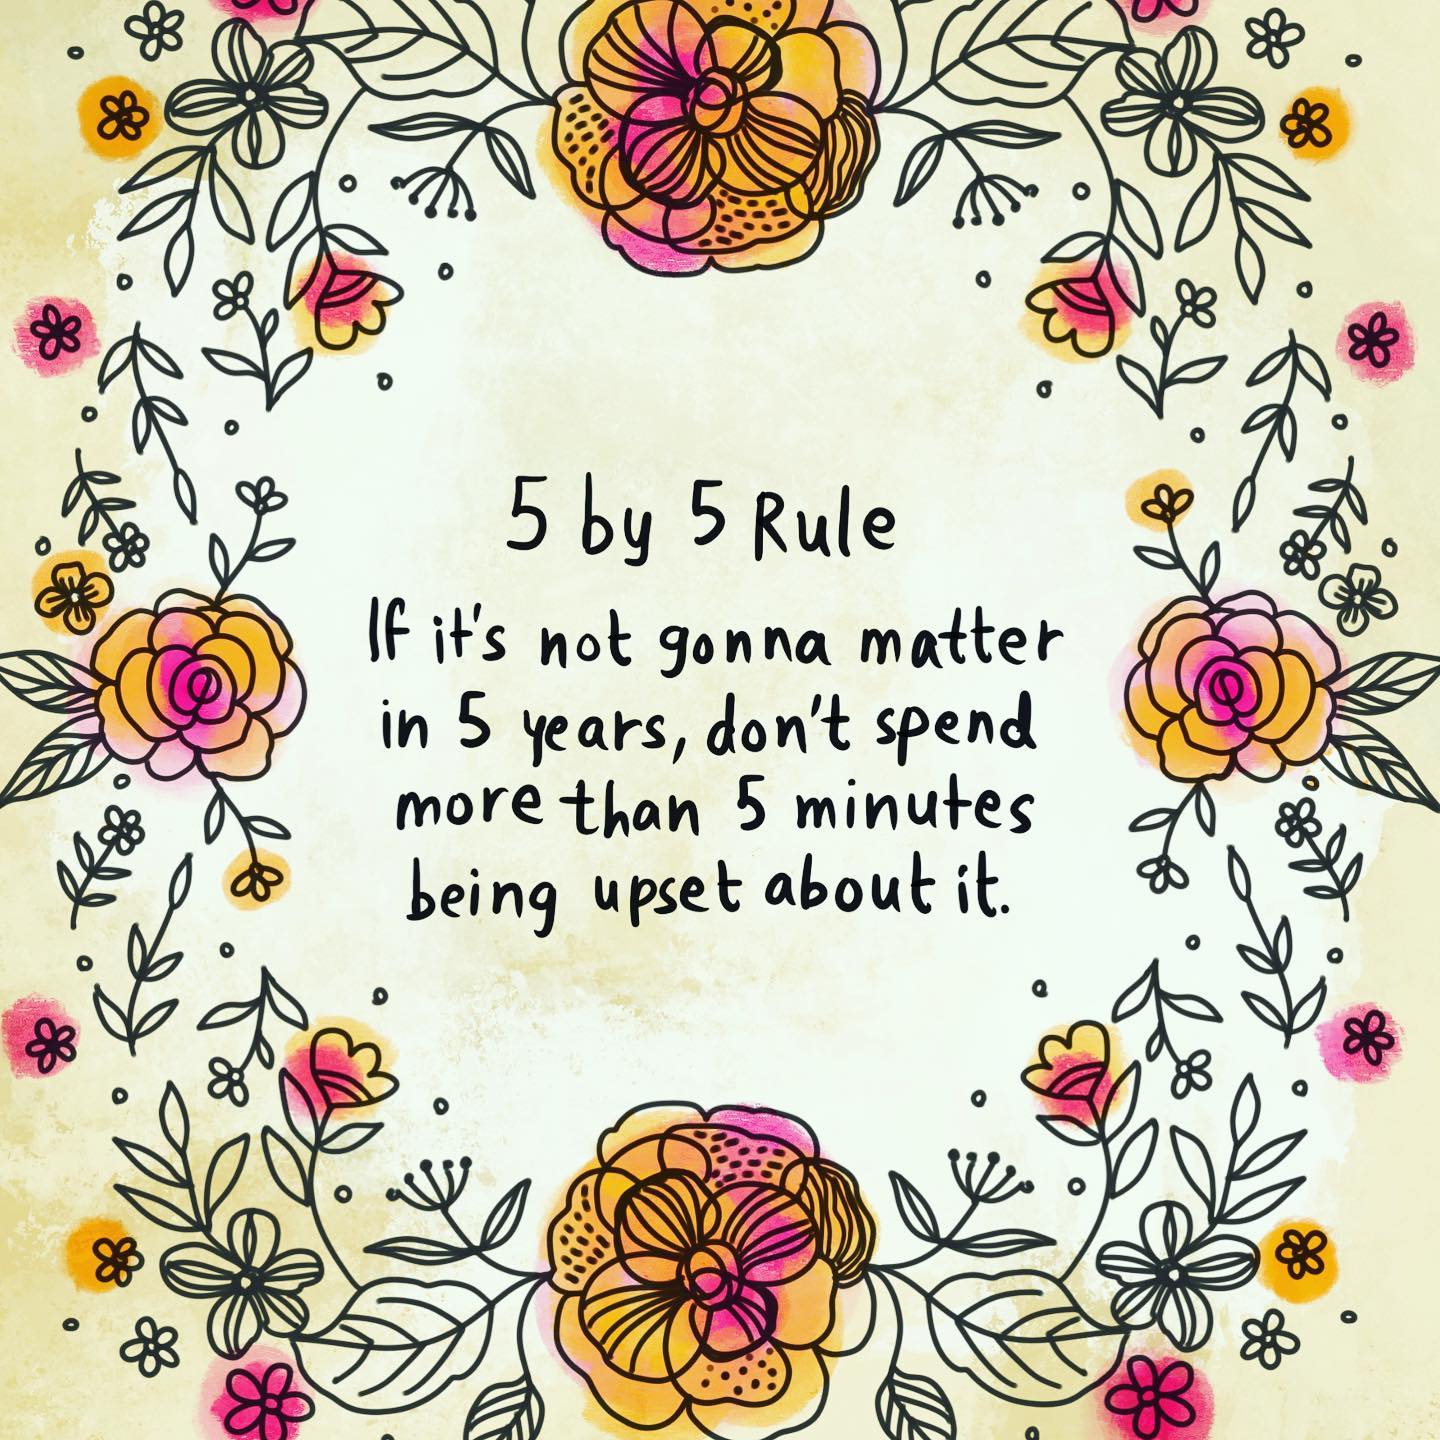 5 by 5 Rule...